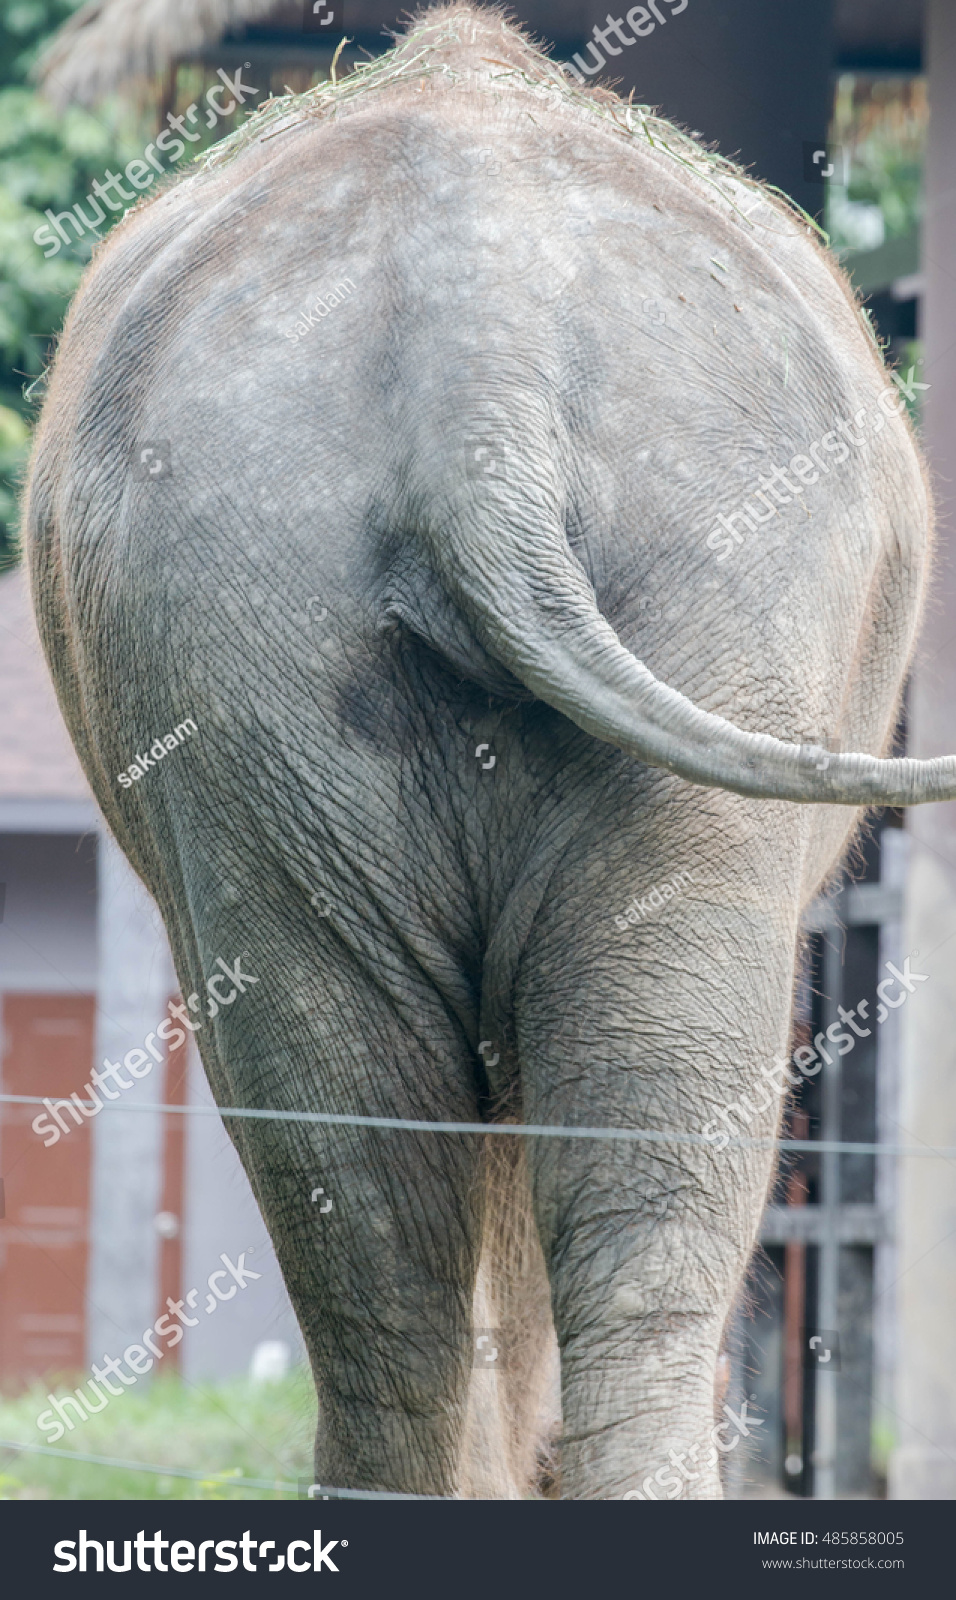 Big Ass Elephant Stock Photo 485858005 Shutterstock.